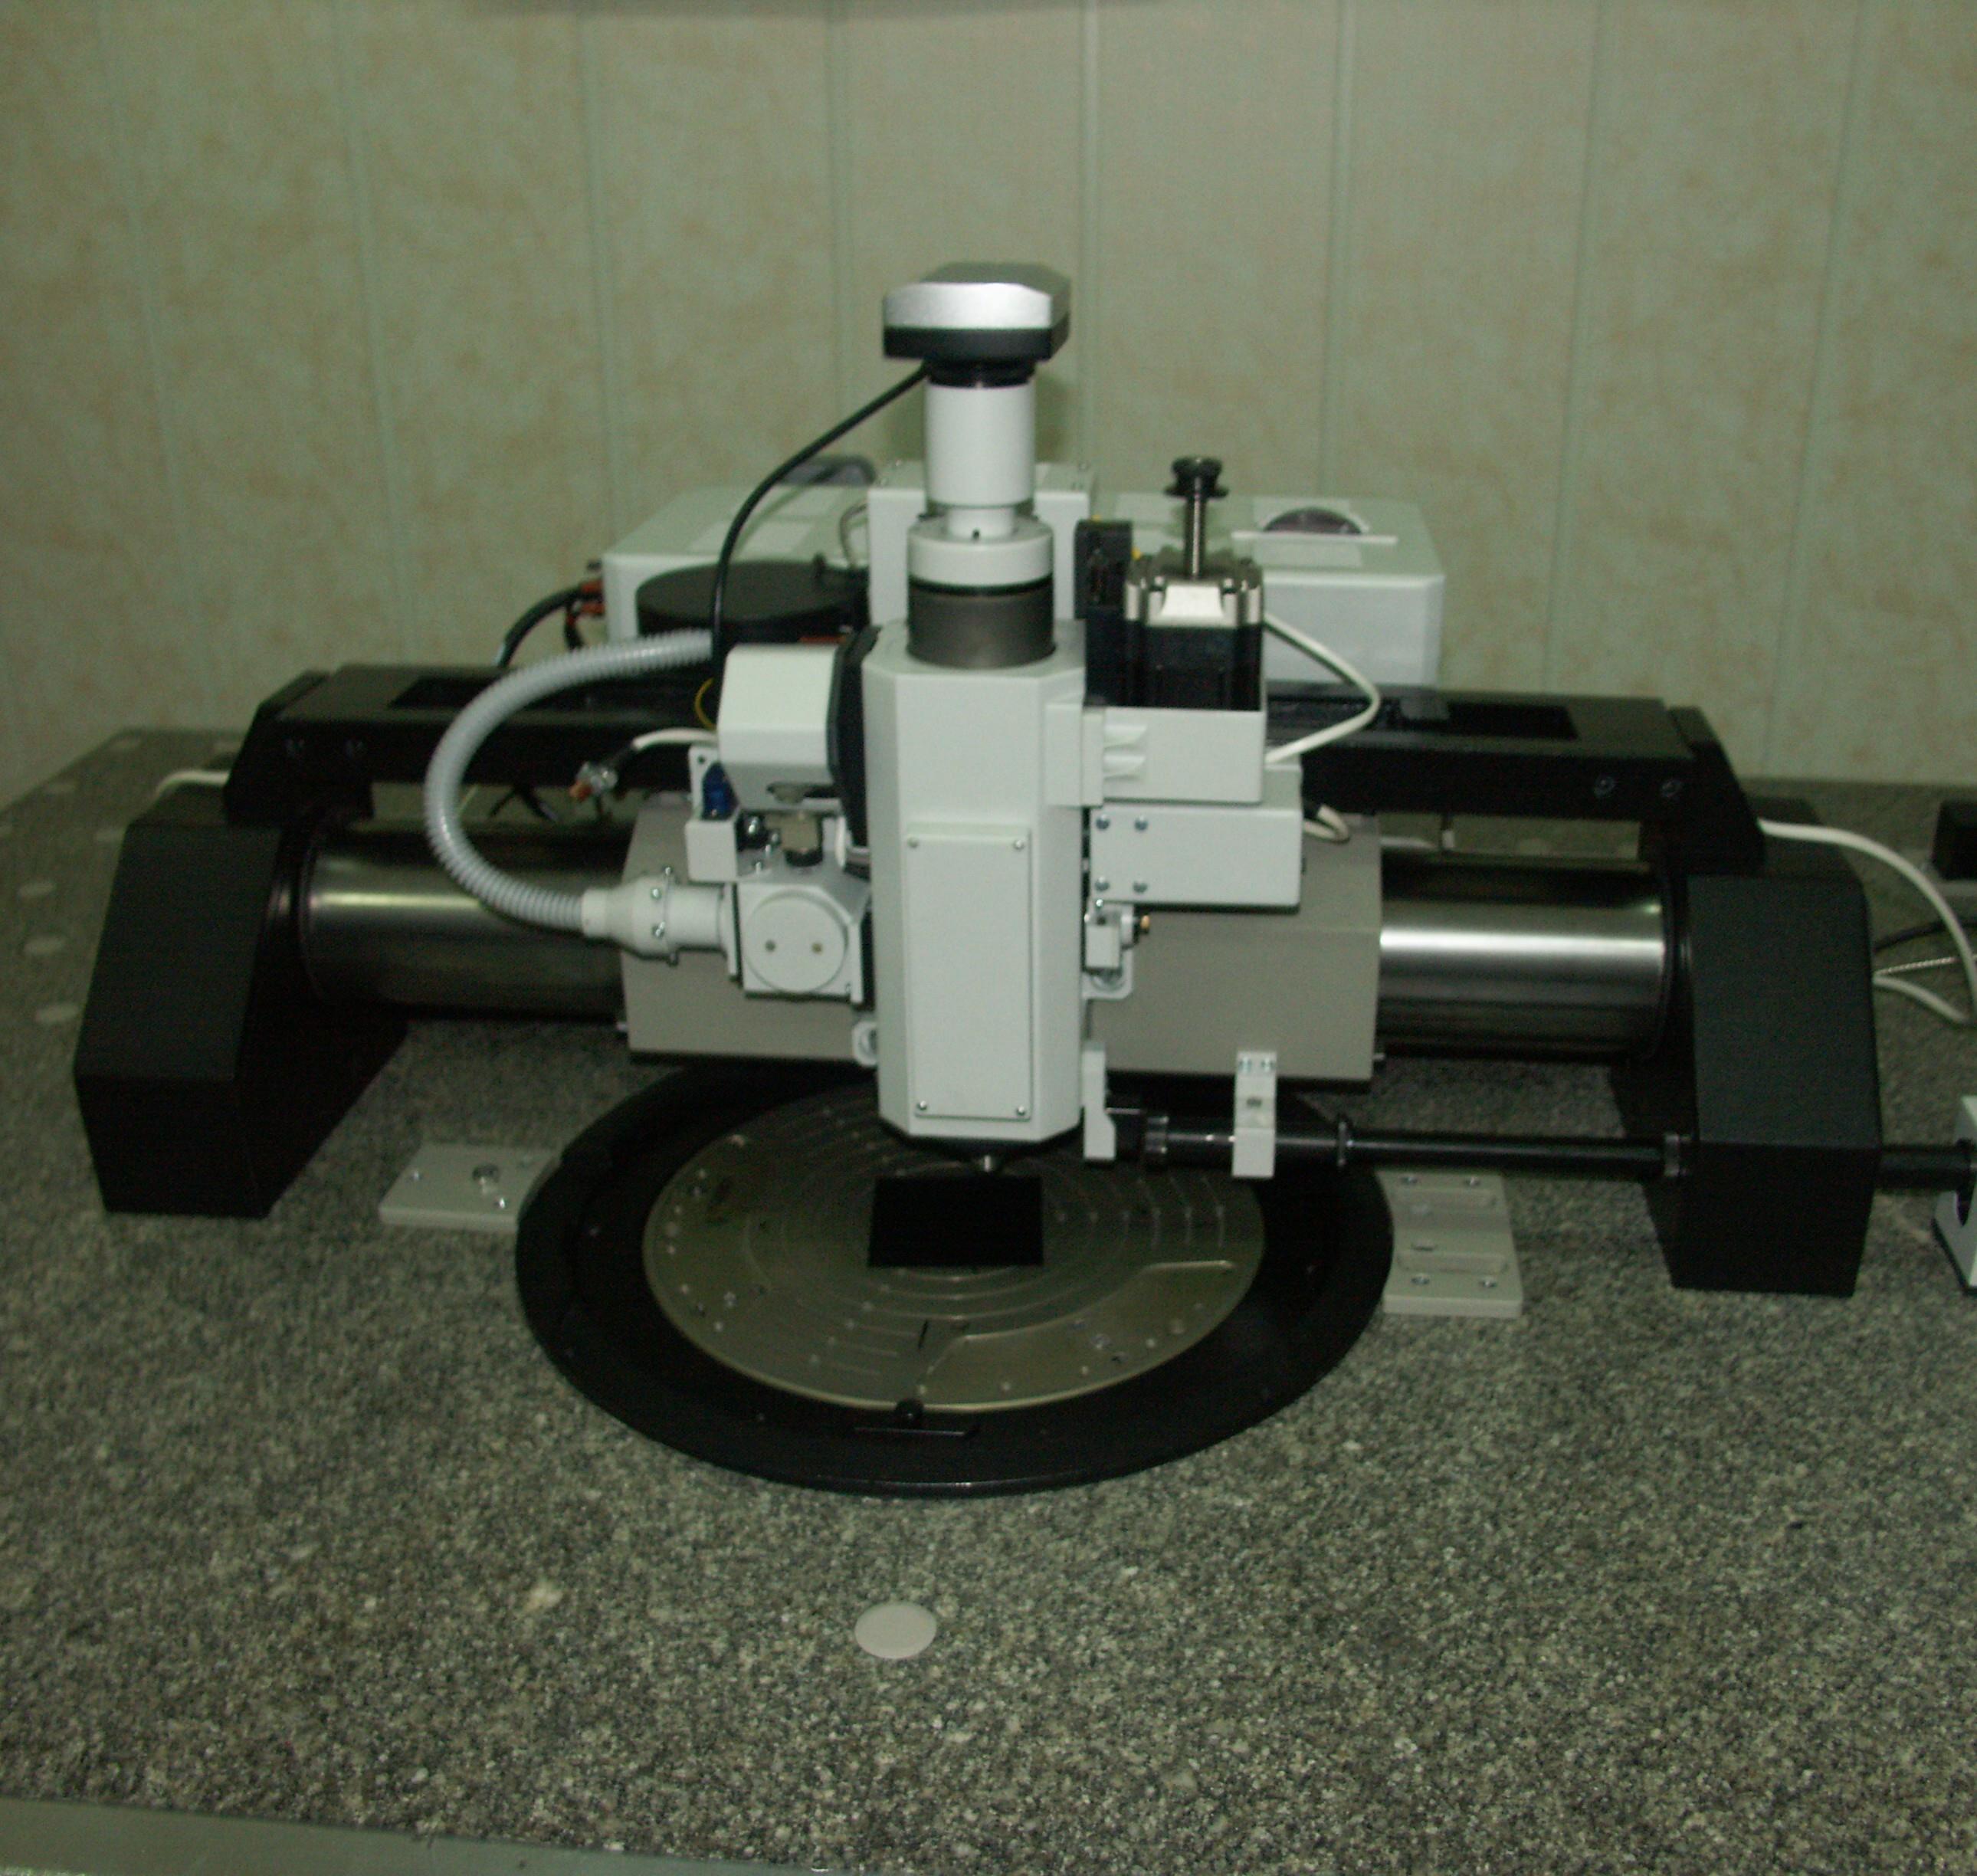 Лазерный генератор изображений "ЛГИ-2"